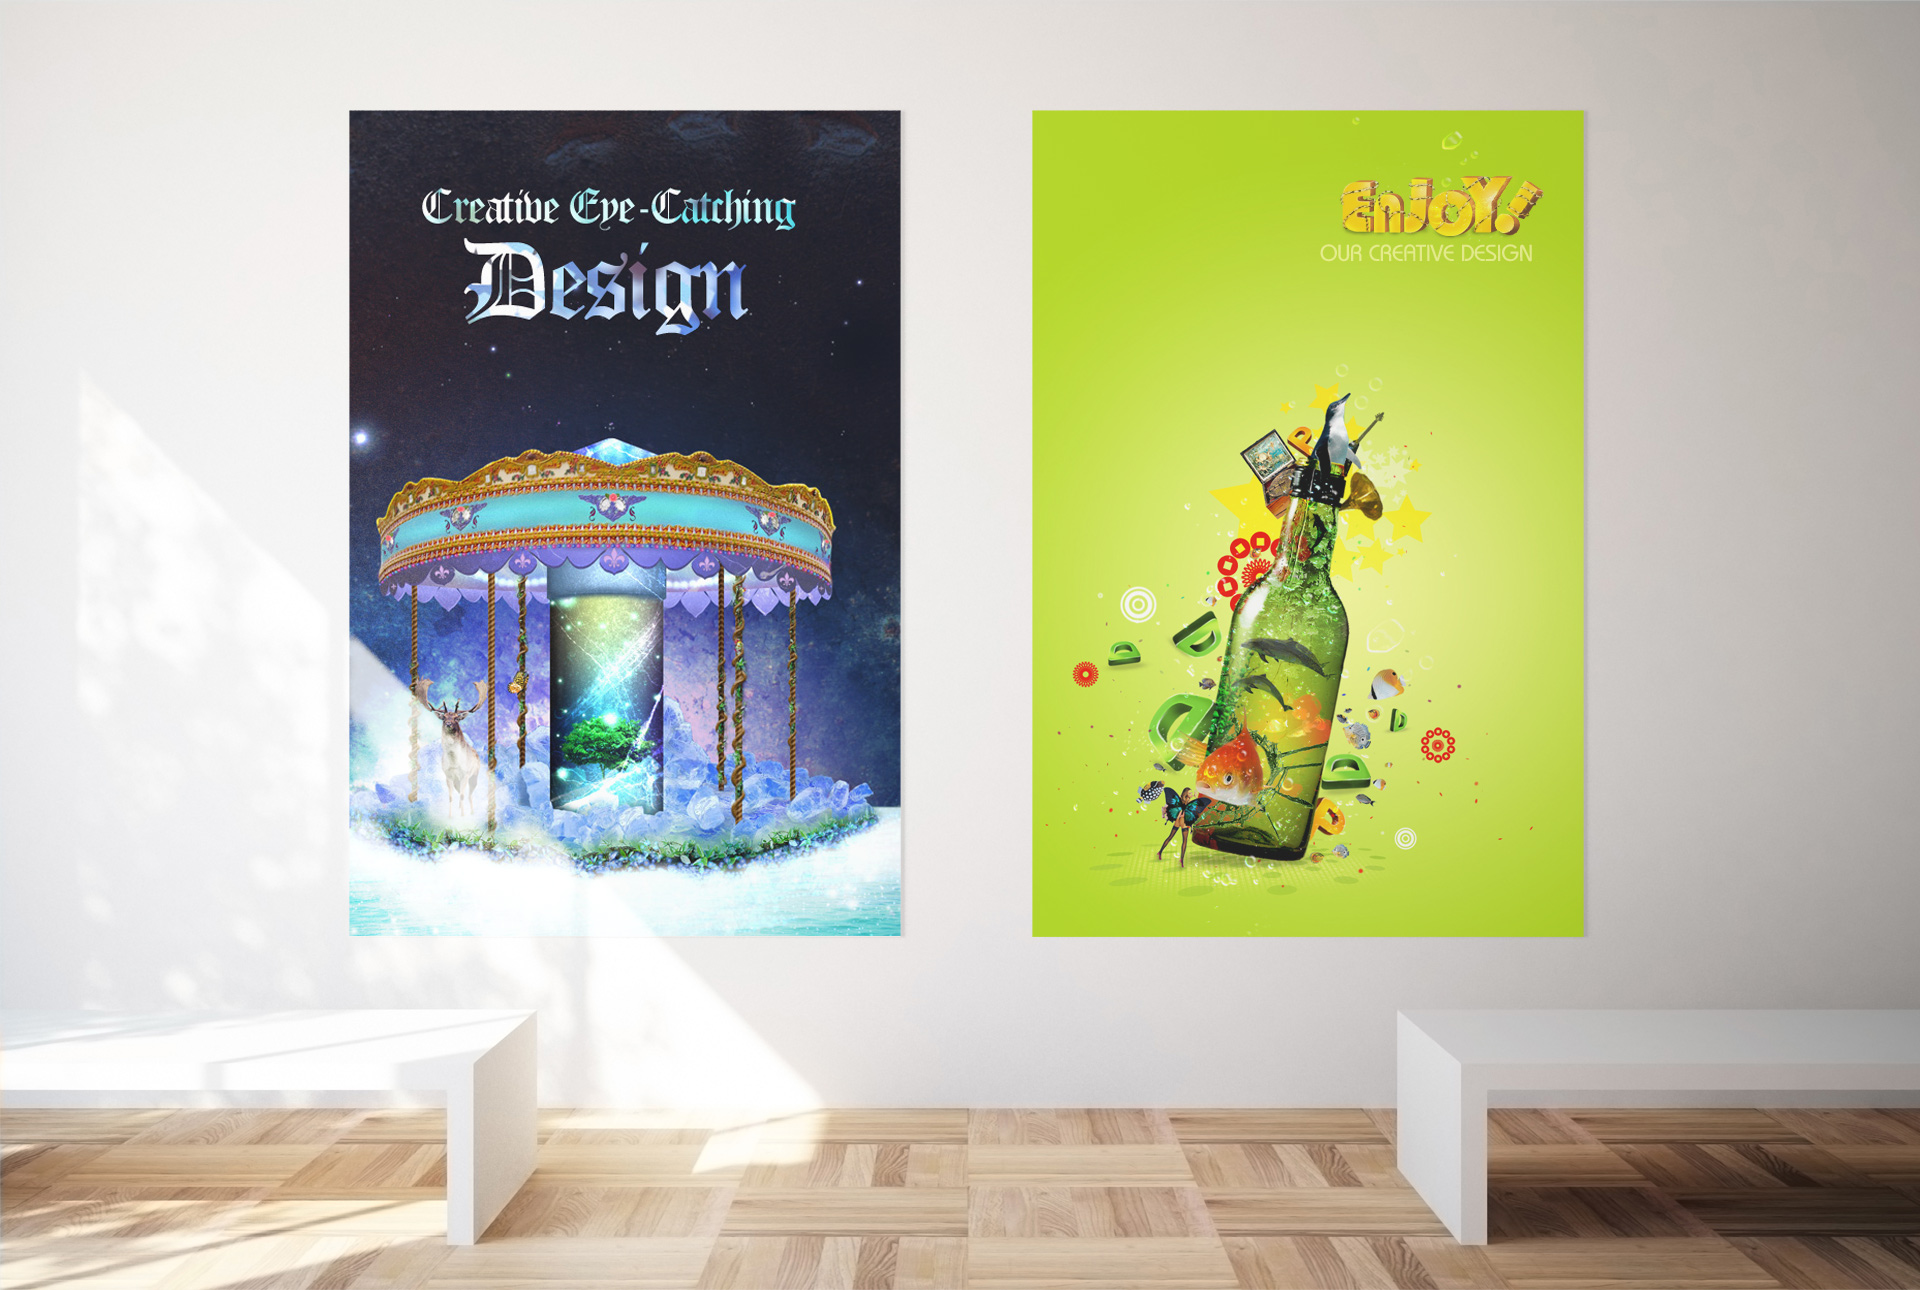 UI Design, App Design, Mobile site, Website Design, Print Design, Graphic Design